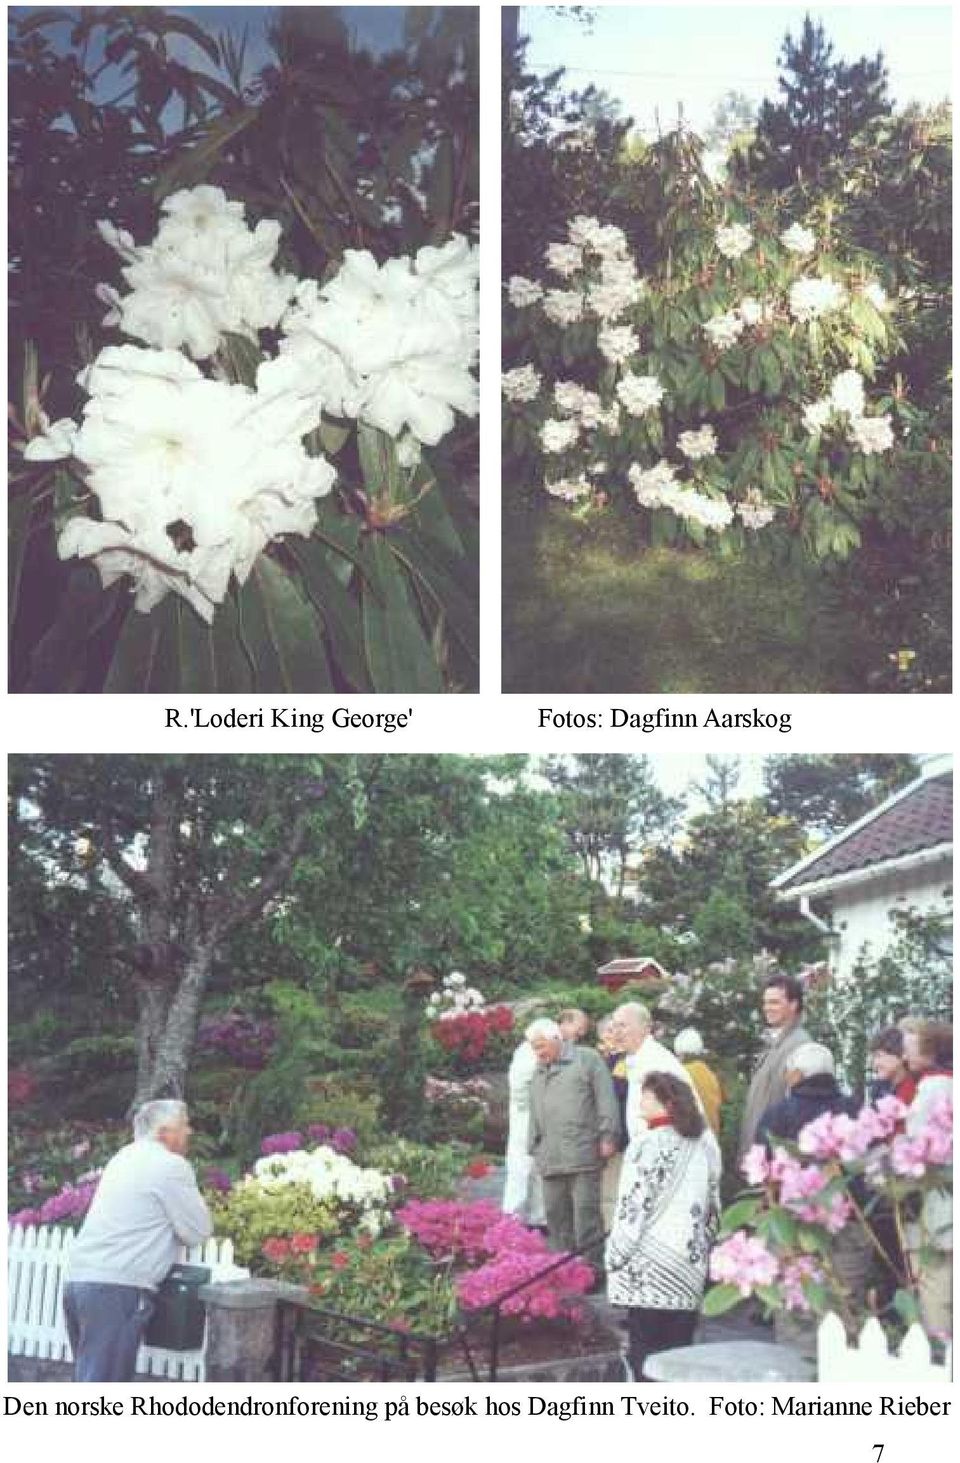 Rhododendronforening på besøk